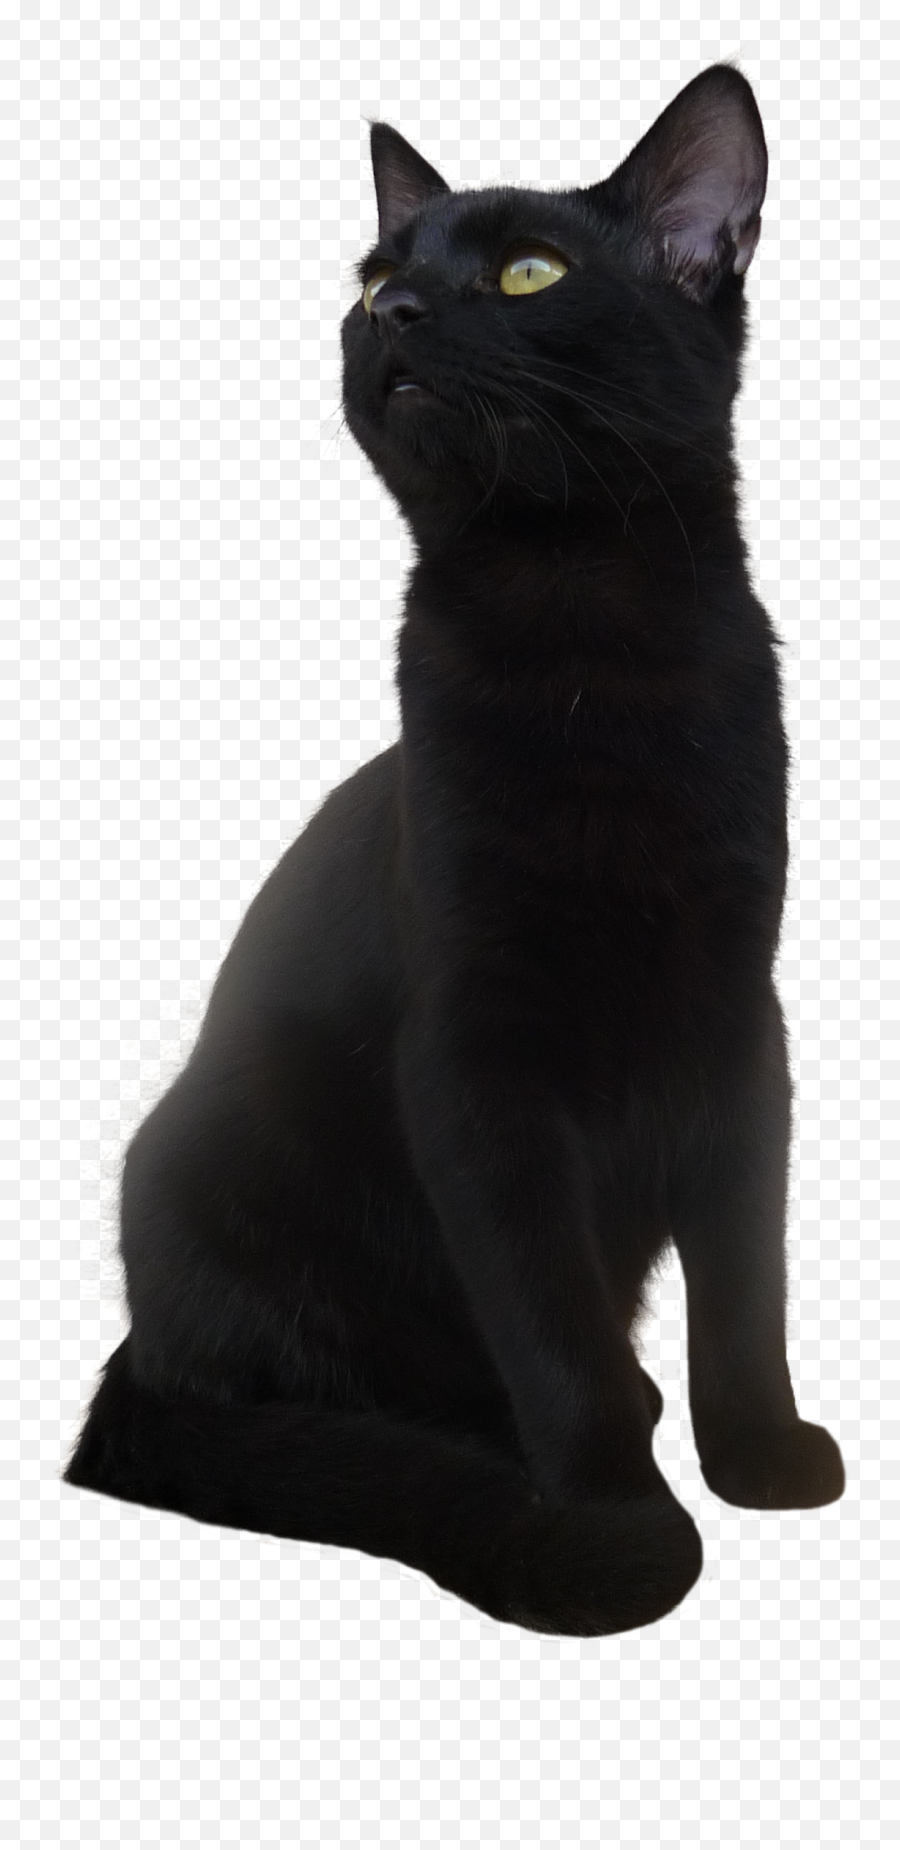 Black Cat Png Transparent Picture Aile Chauve Souris Chat Free Transparent Png Images Pngaaa Com